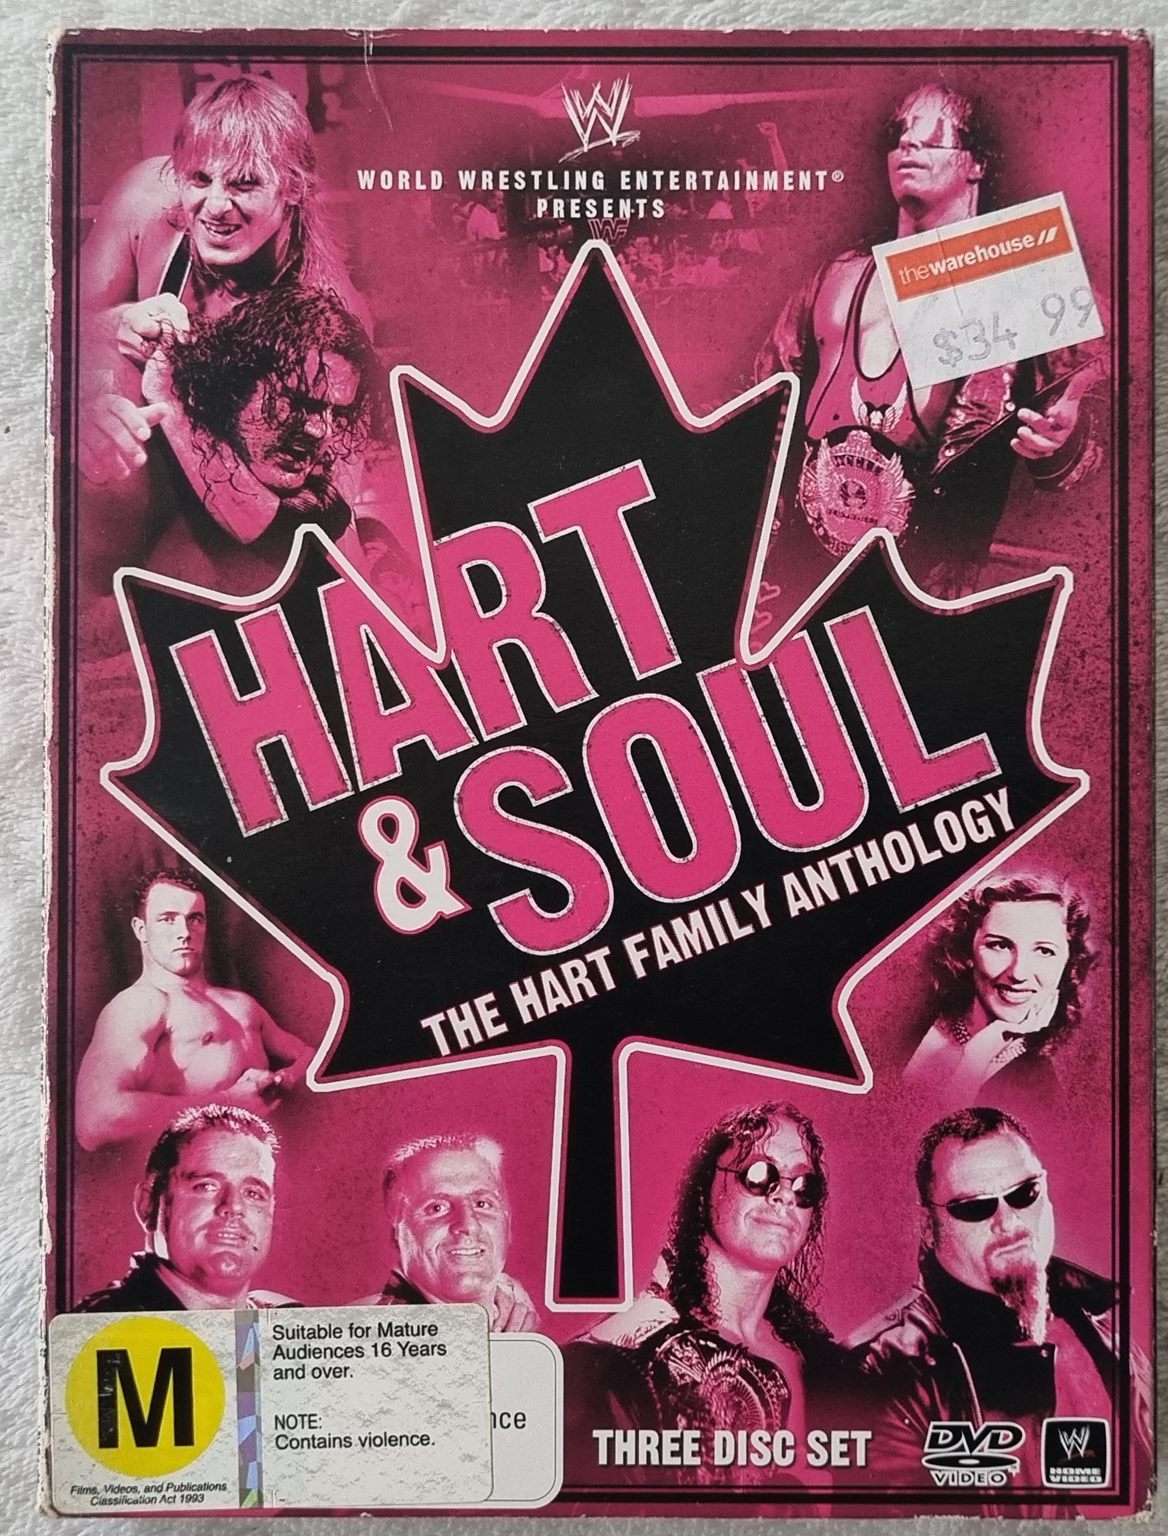 WWE: Hart & Soul: The Family Anthology 3 Disc Set